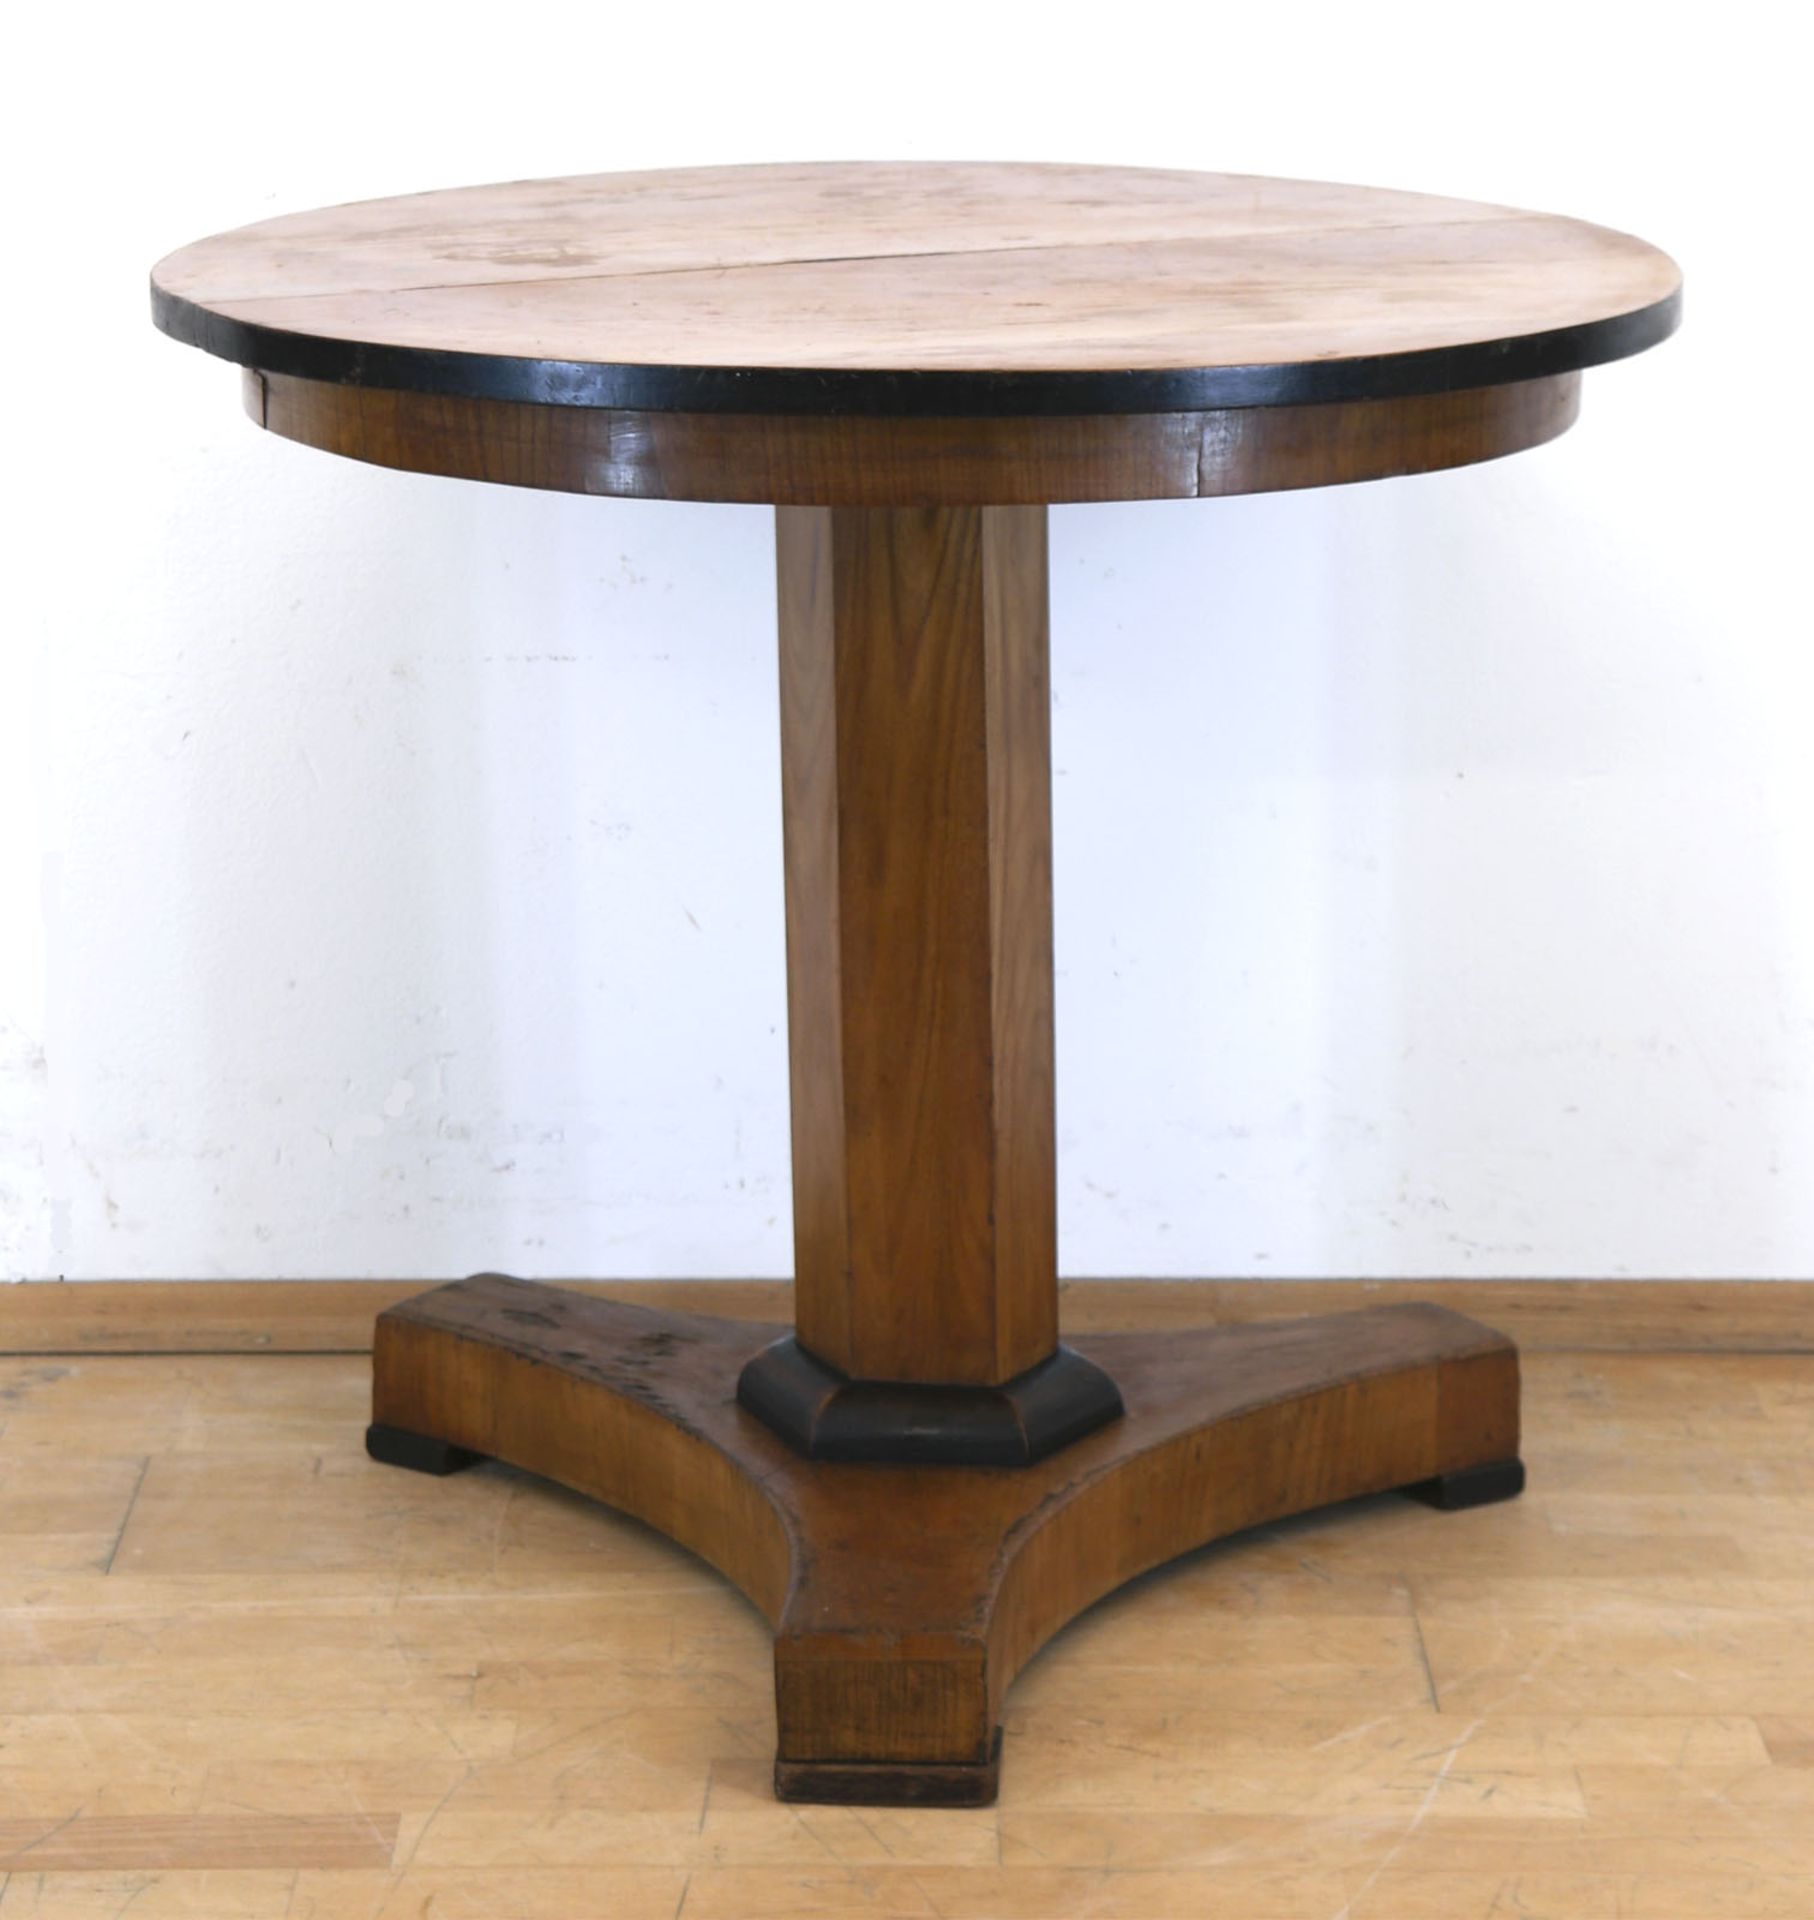 Biedermeier-Tisch, Kirsche, furniert, über 3-passig eingebogter Fußplatte 6-kantige Säule und runde